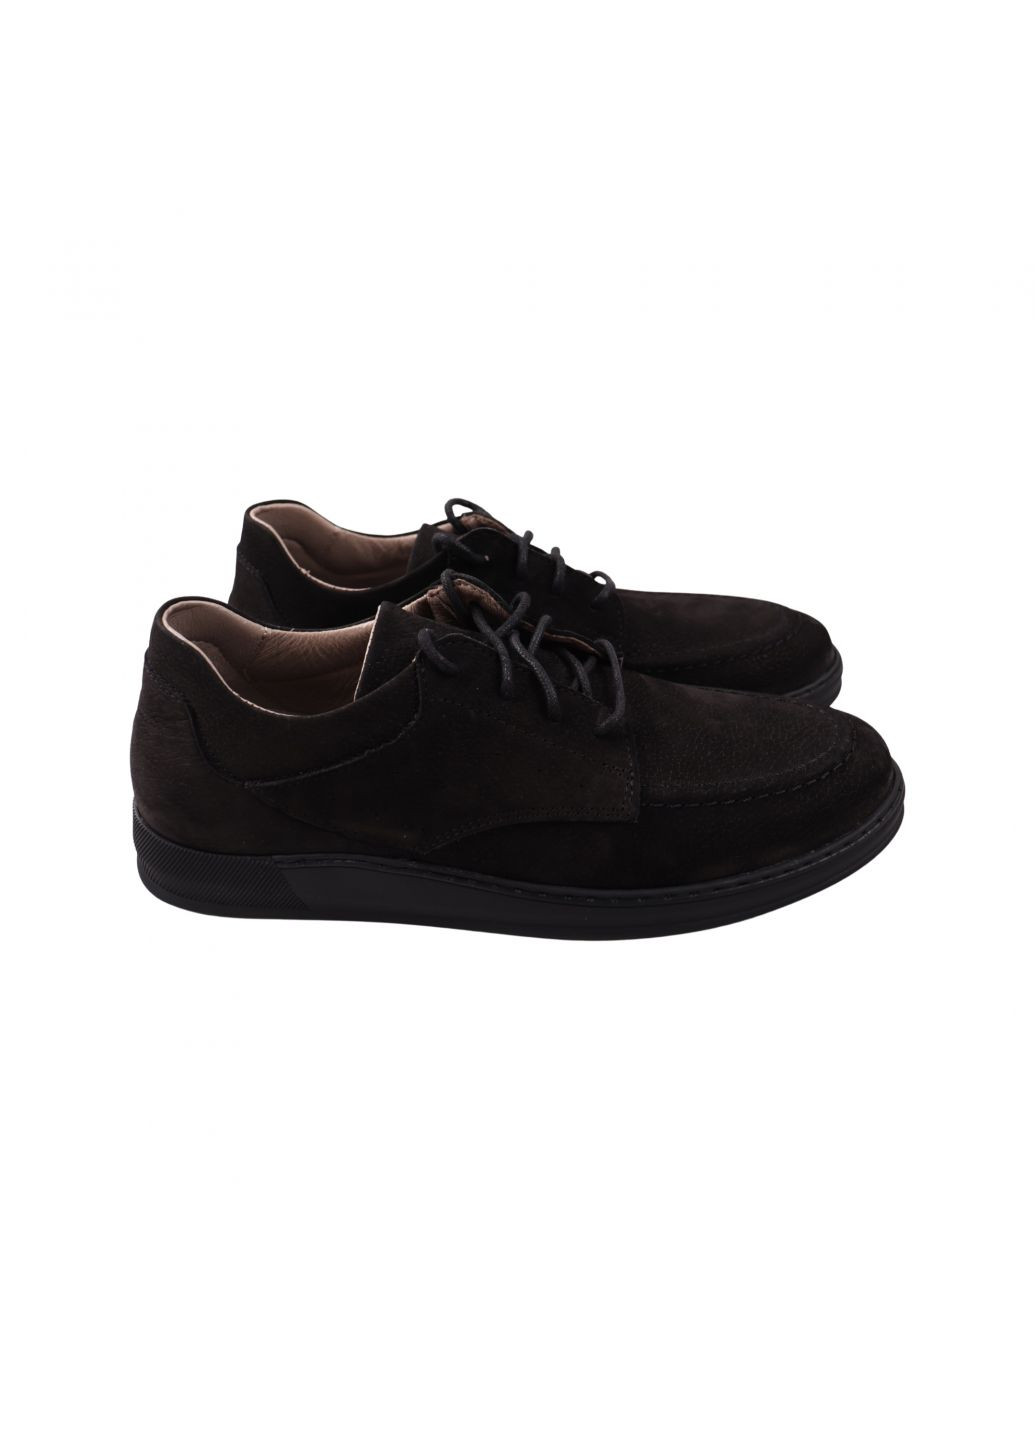 Черные туфли мужские черные натуральный нубук Vadrus